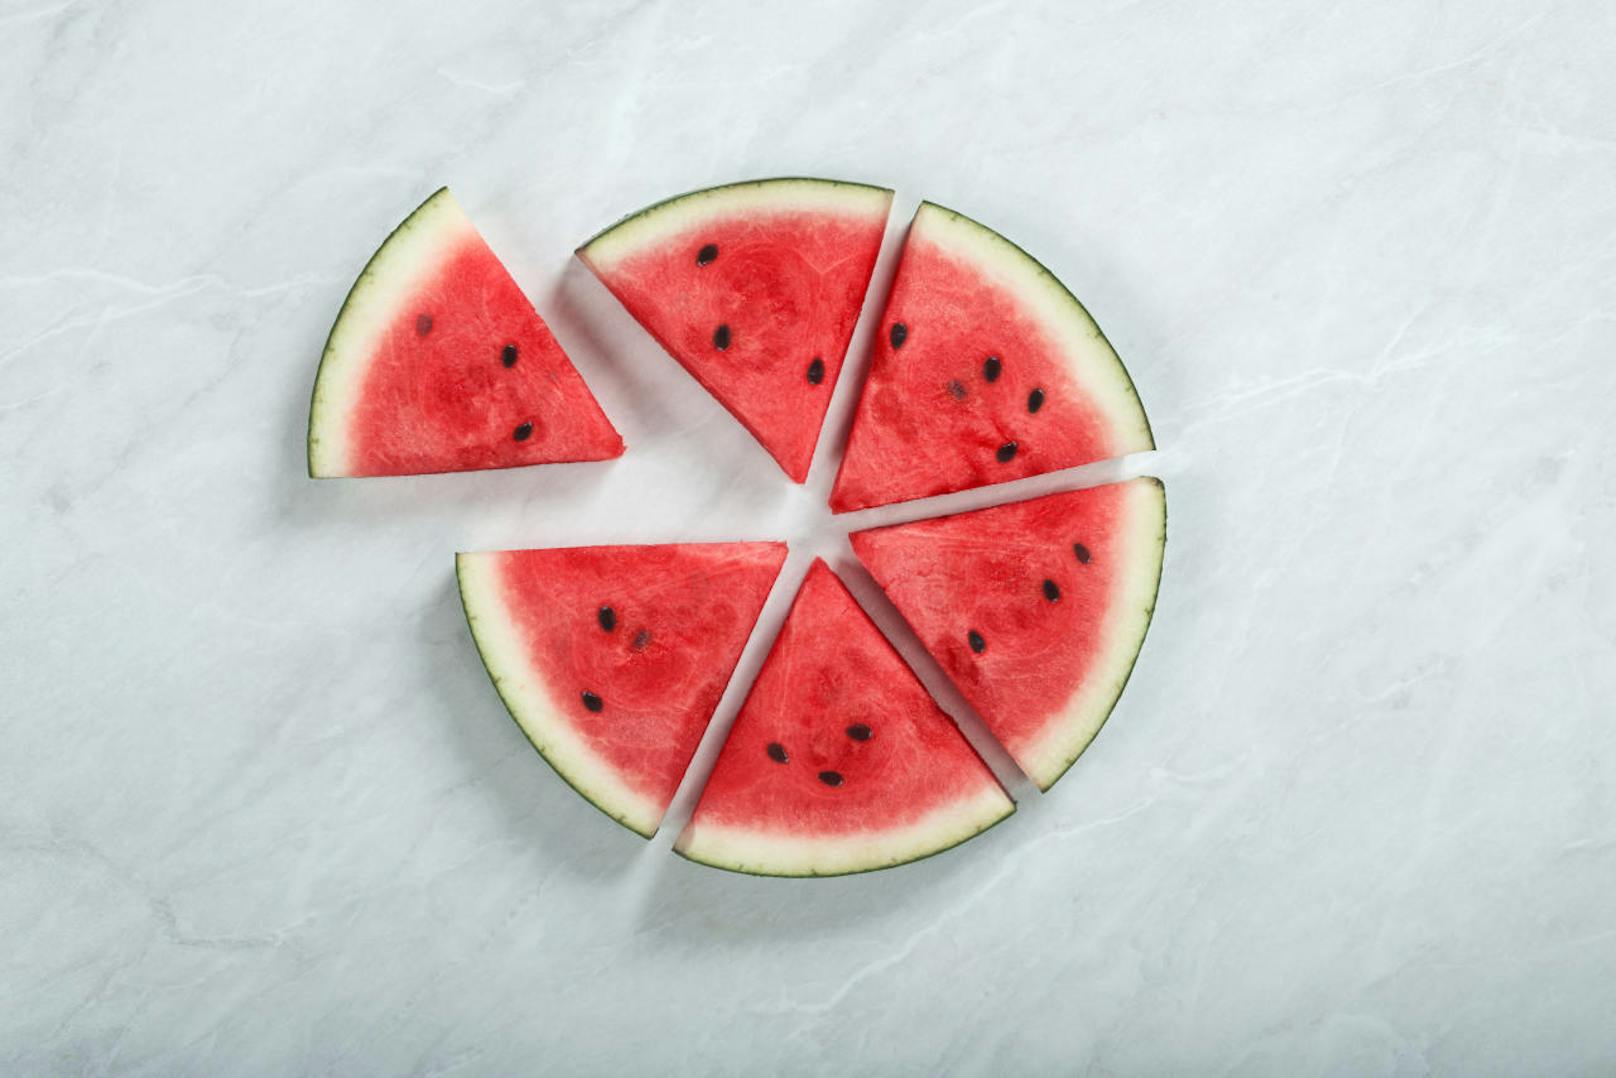 Auf 100 g Wassermelone kommen 8,3 g Kohlenhydrate.